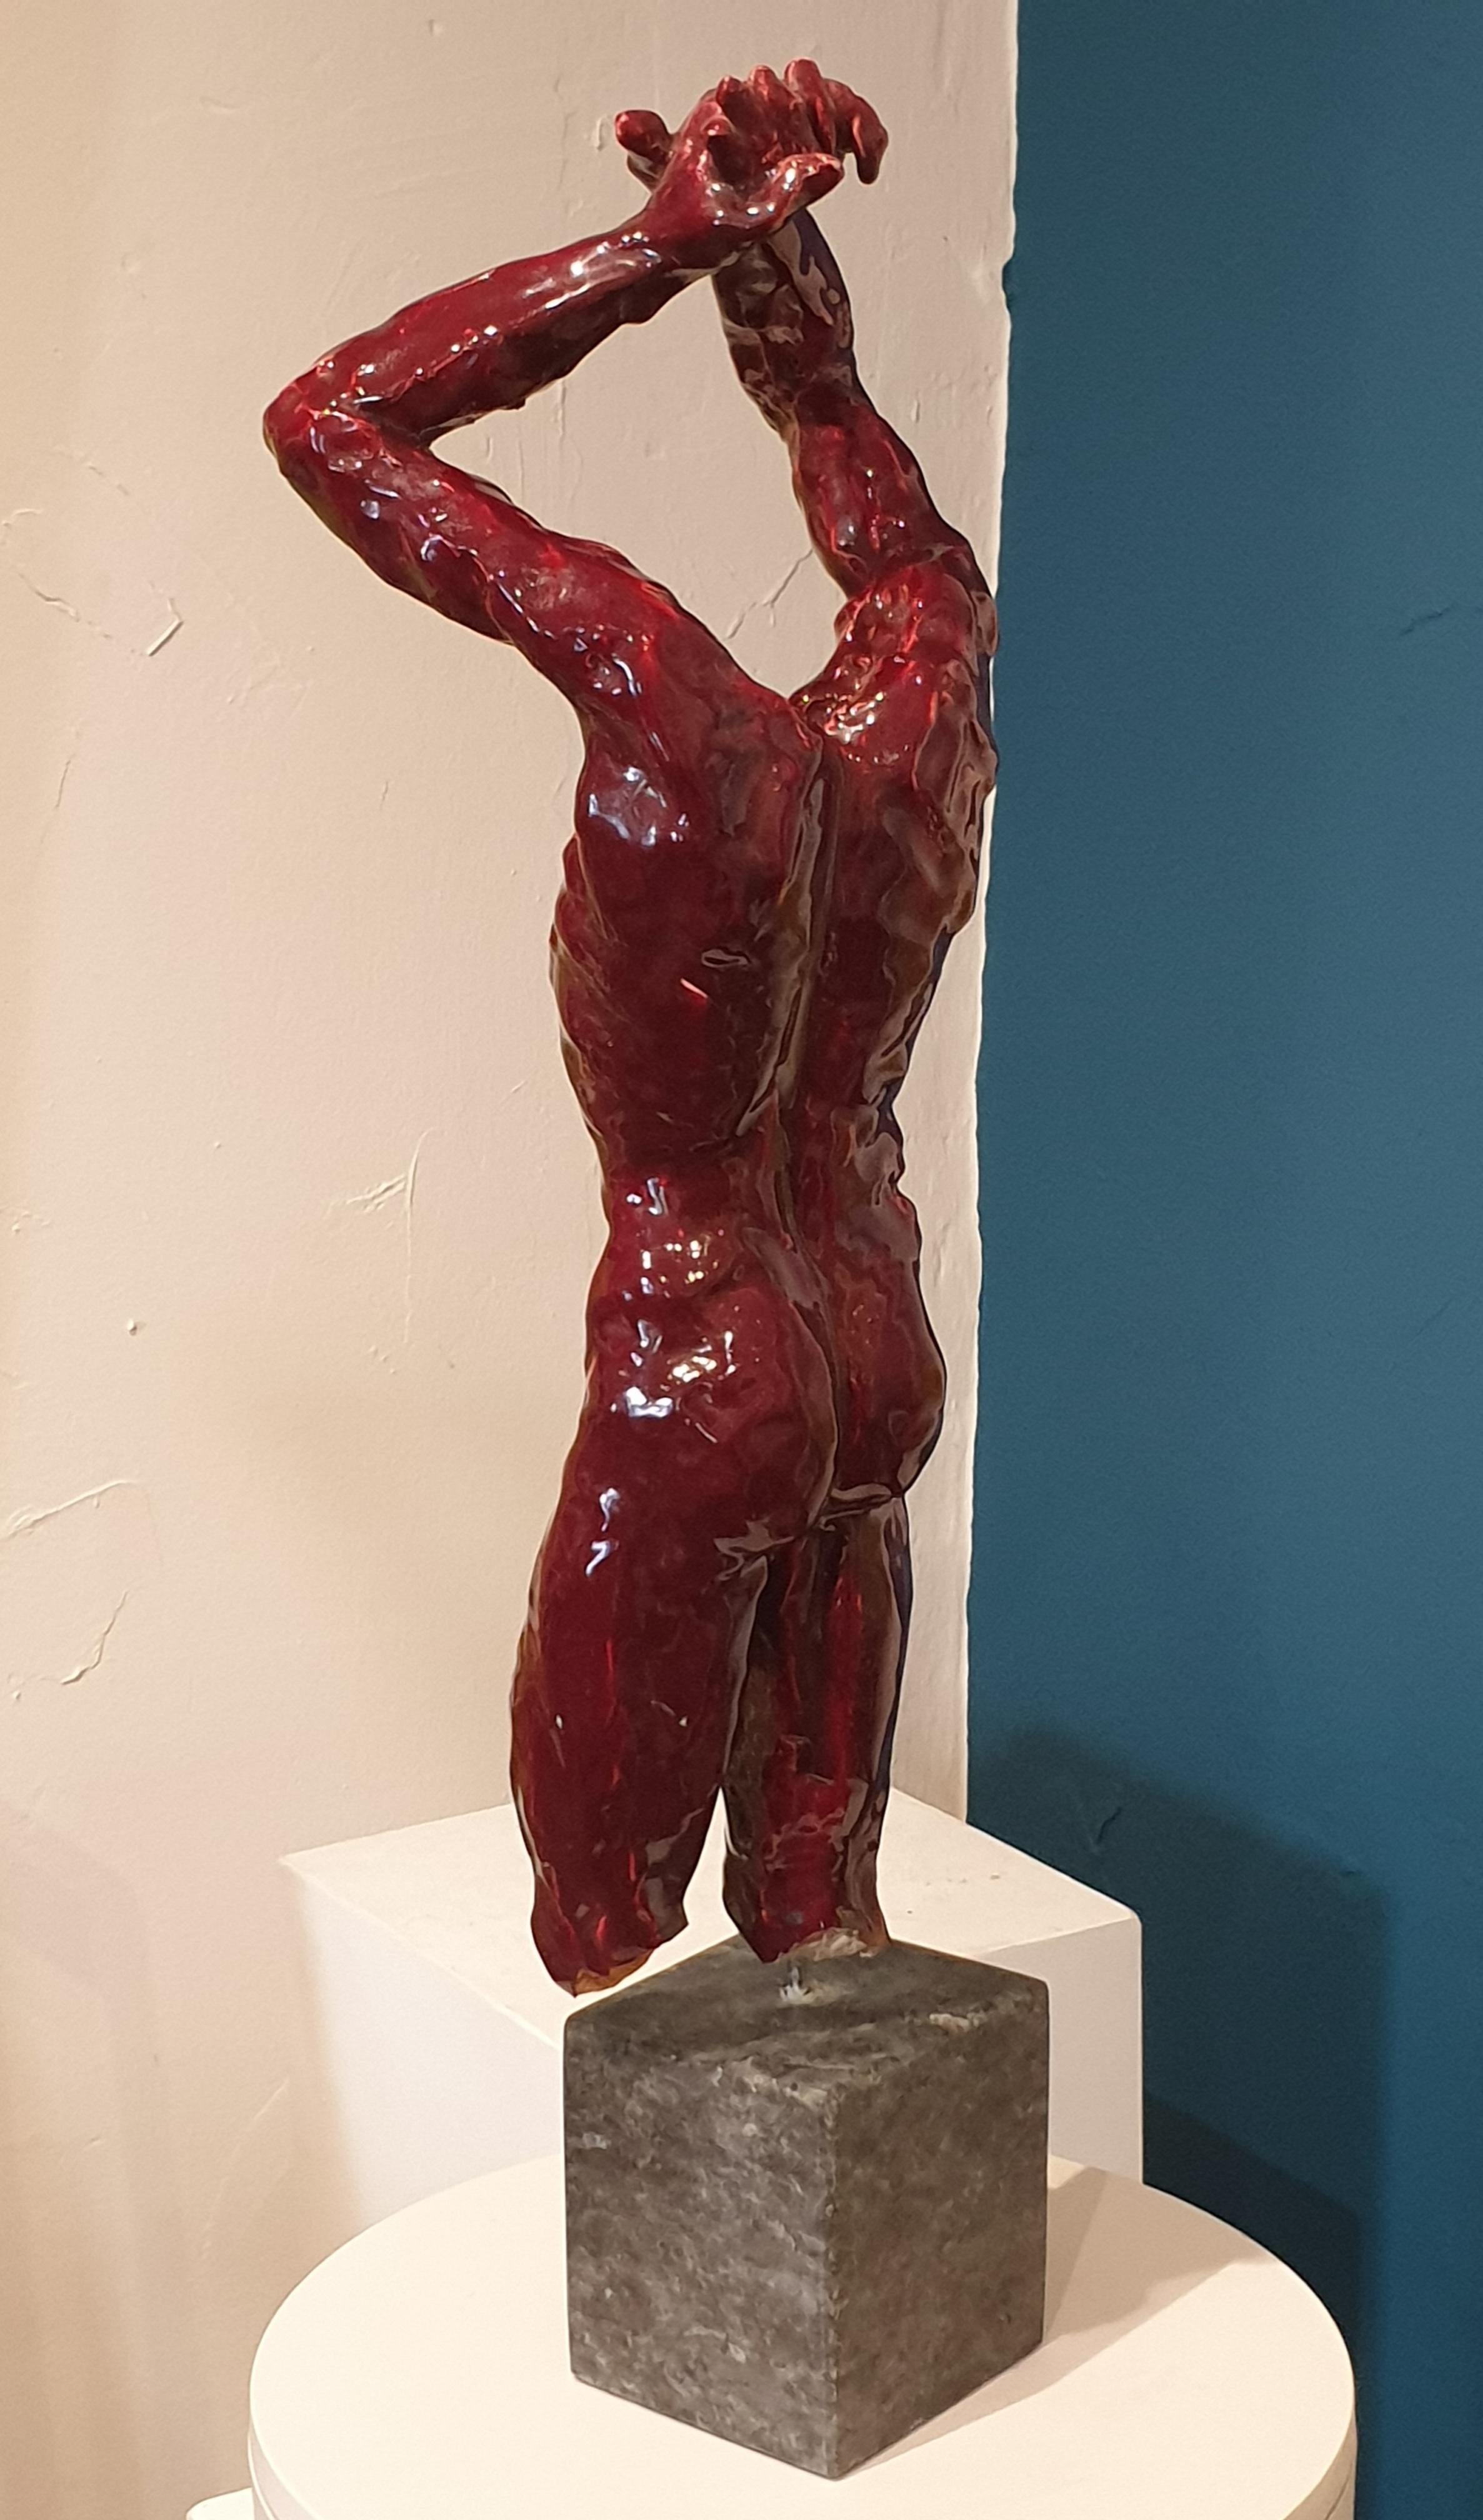 Französische Keramikfigur eines Mannes aus der Mitte des 20. Jahrhunderts in Sang de Boeuf, ochsenblutrot glasiert, auf einem Sockel aus Metall und Marmor.

Die Skulptur ist nicht signiert, wurde aber in den 1970er Jahren in Nizza (Frankreich) als